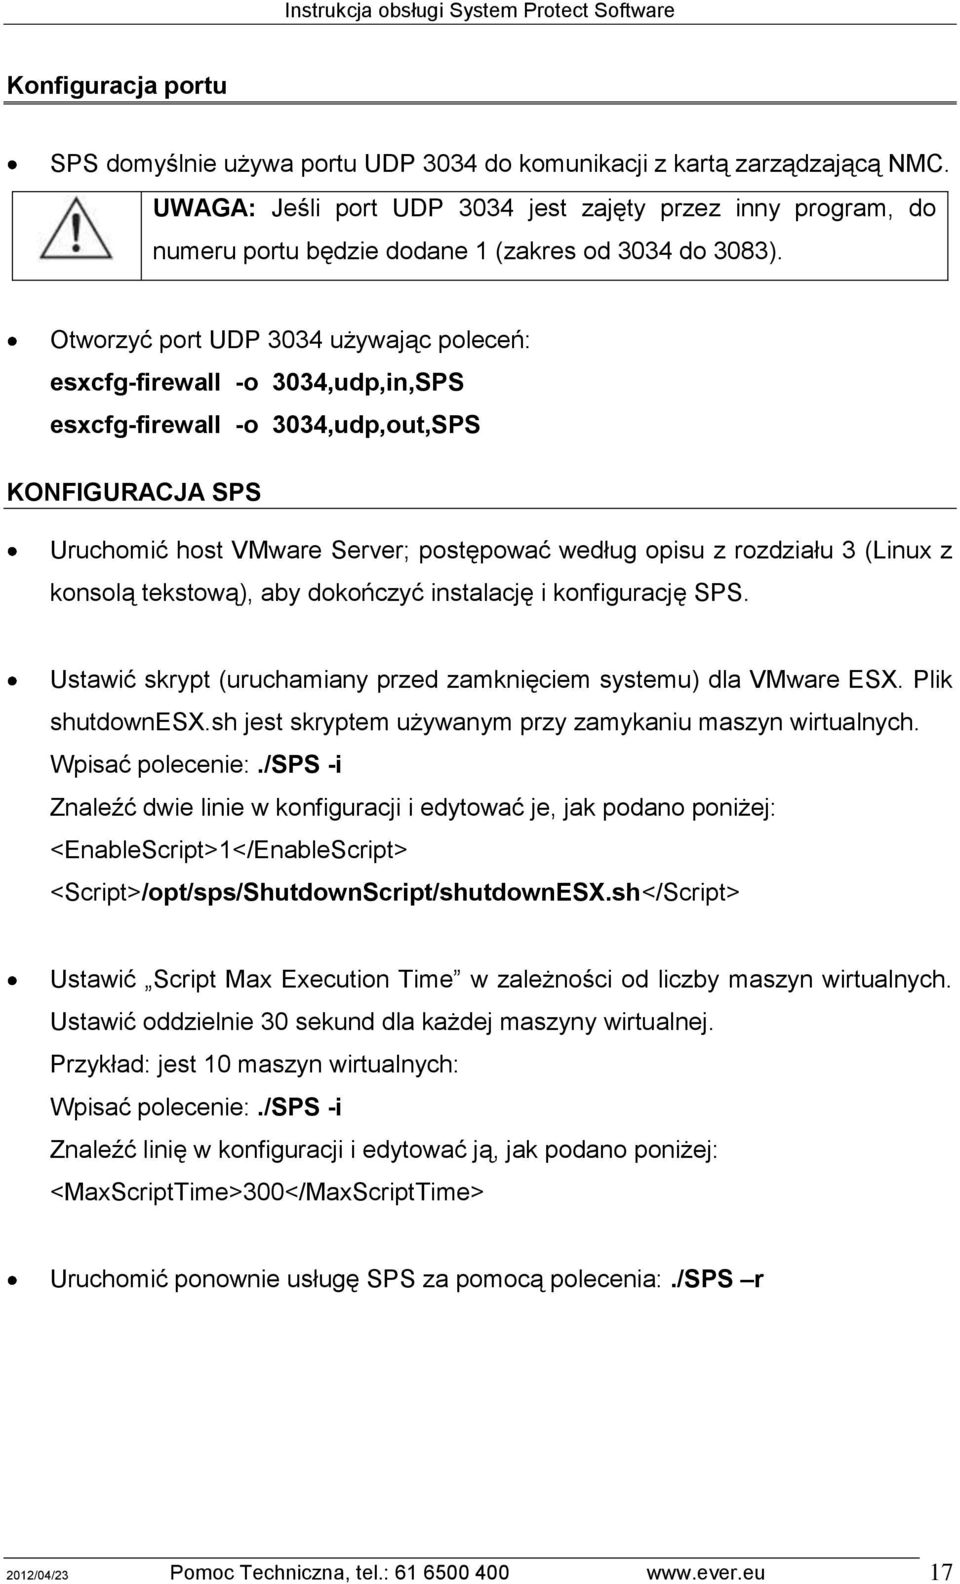 Otworzyć port UDP 3034 używając poleceń: esxcfg-firewall -o 3034,udp,in,SPS esxcfg-firewall -o 3034,udp,out,SPS KONFIGURACJA SPS Uruchomić host VMware Server; postępować według opisu z rozdziału 3